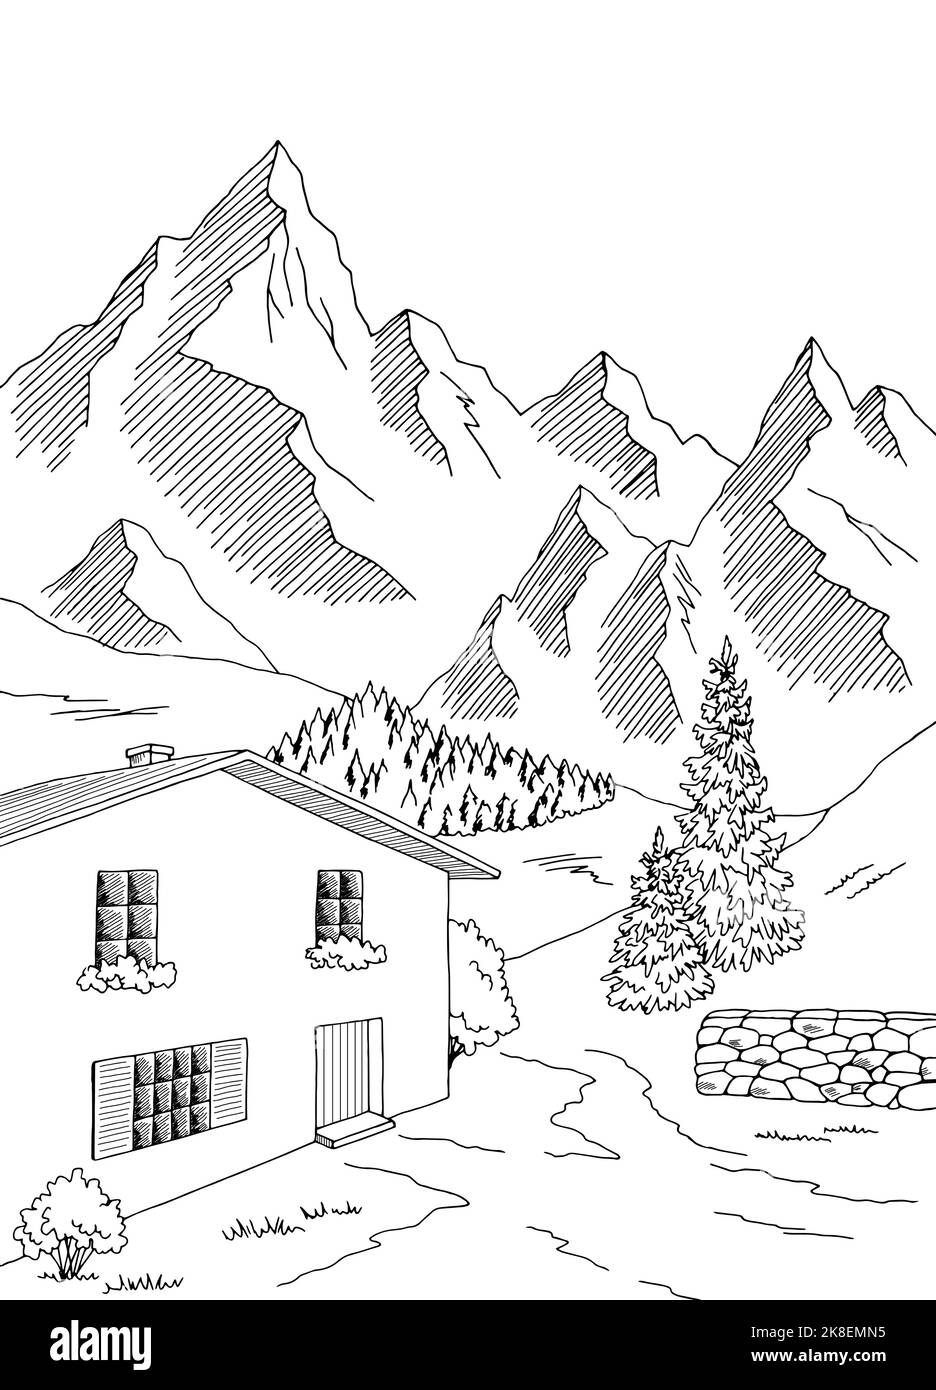 Village montagne graphique noir blanc rural paysage vertical esquisse illustration vecteur Illustration de Vecteur